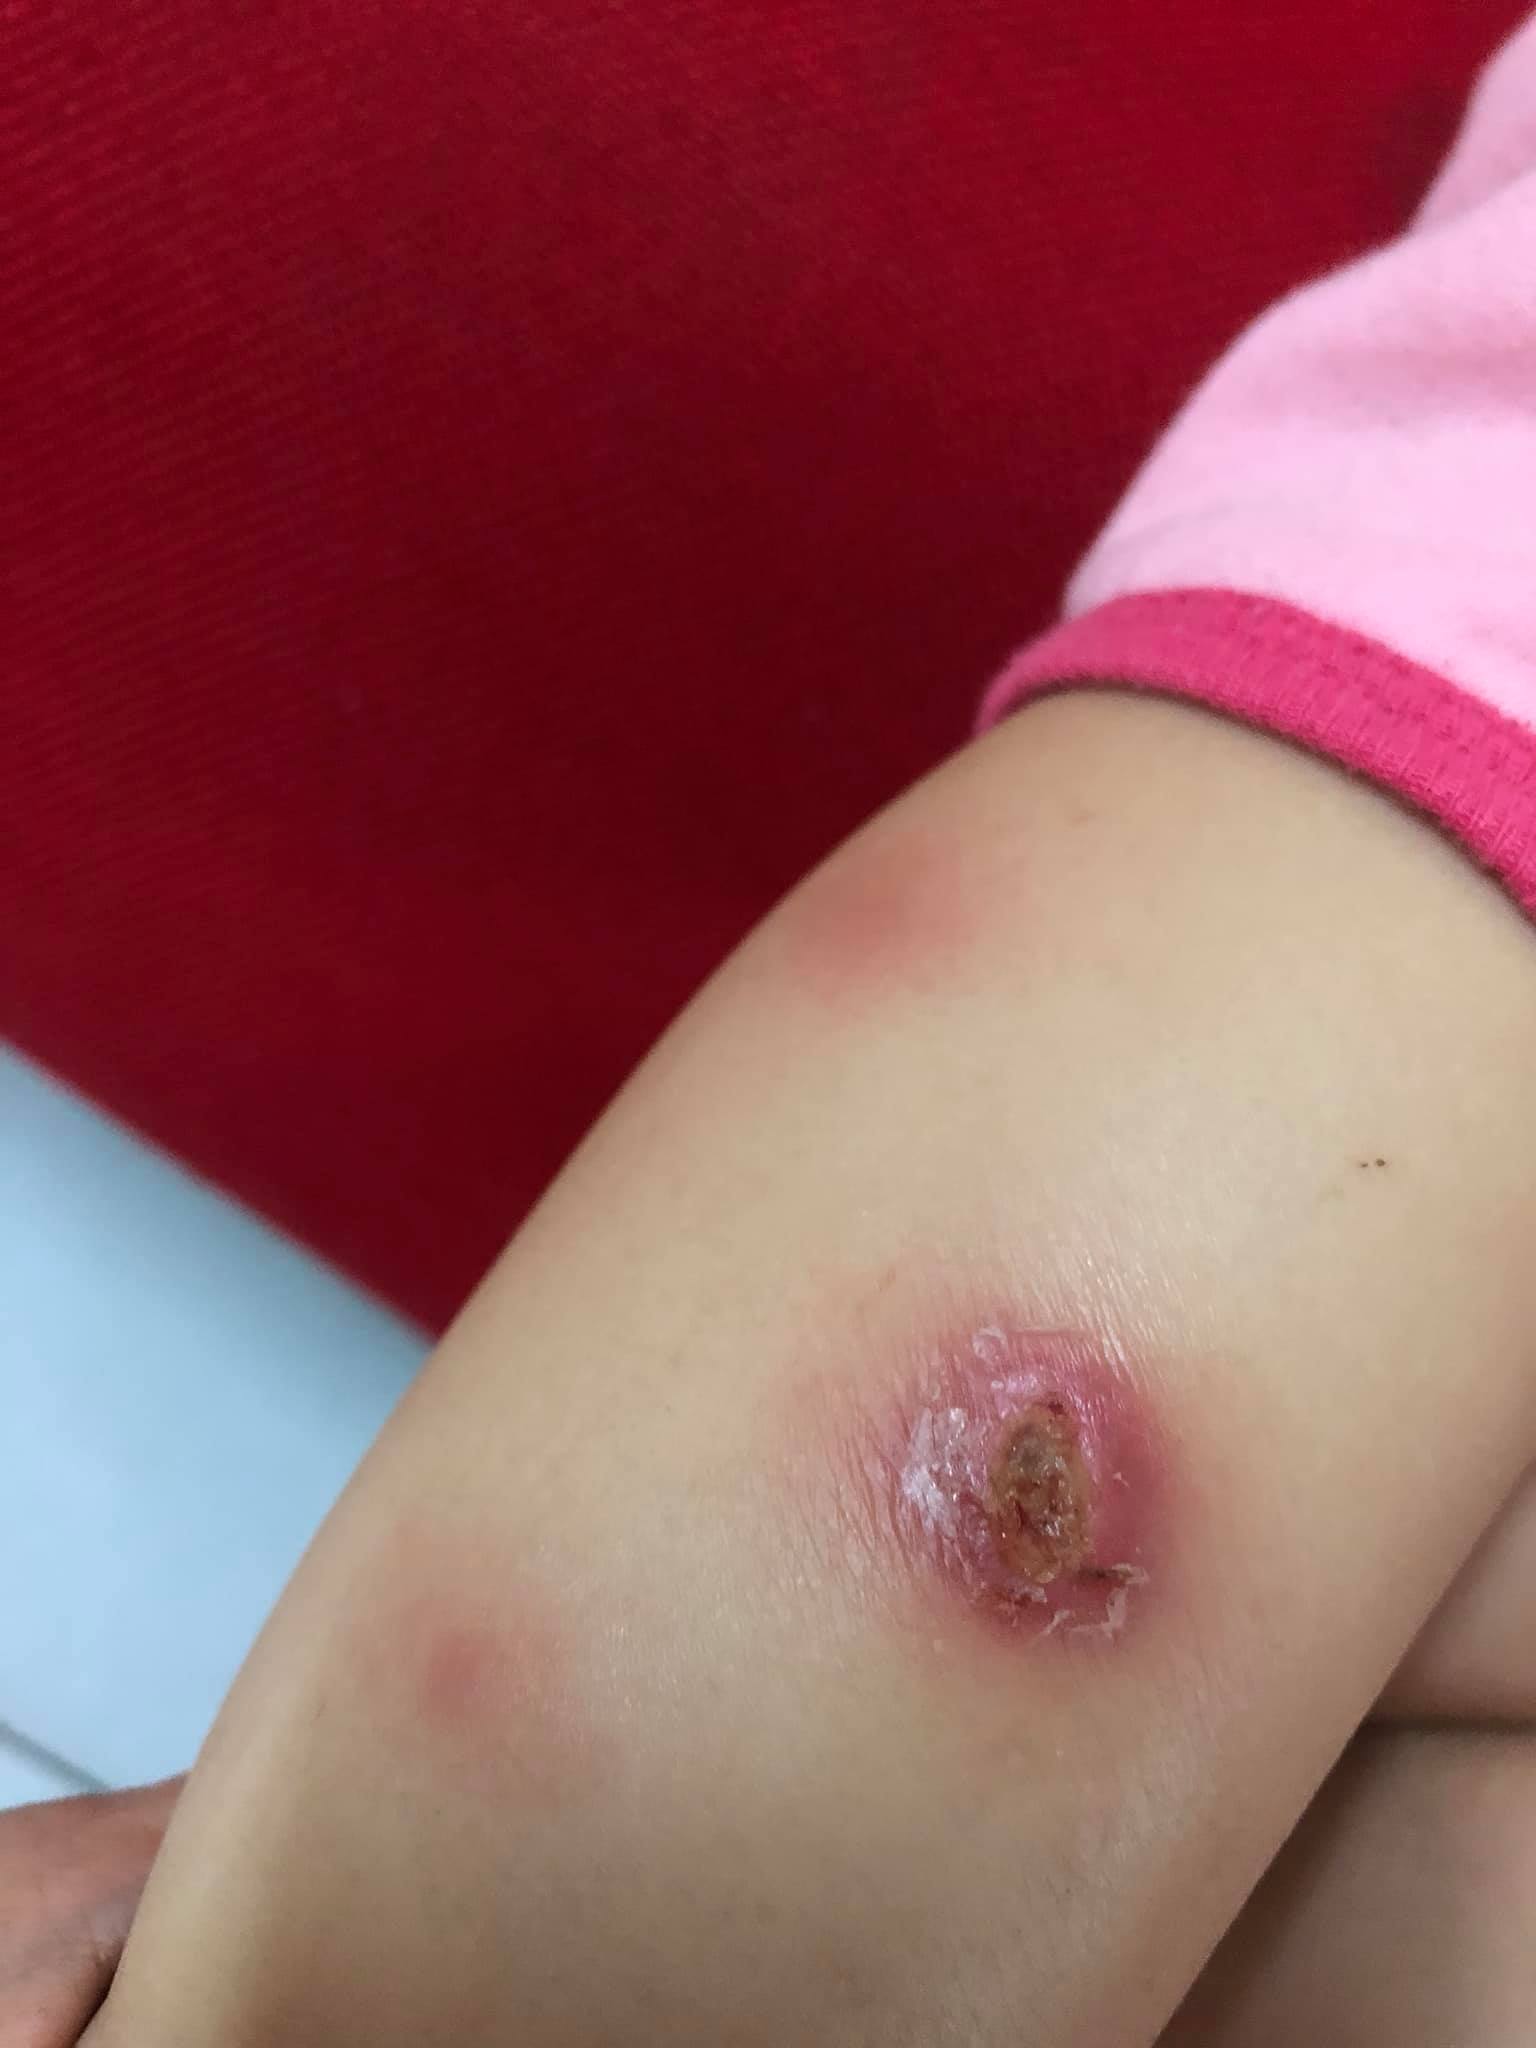 近日在马来西亚,有妈妈就在网上分享,表示早前女儿被昆虫咬伤,但因为